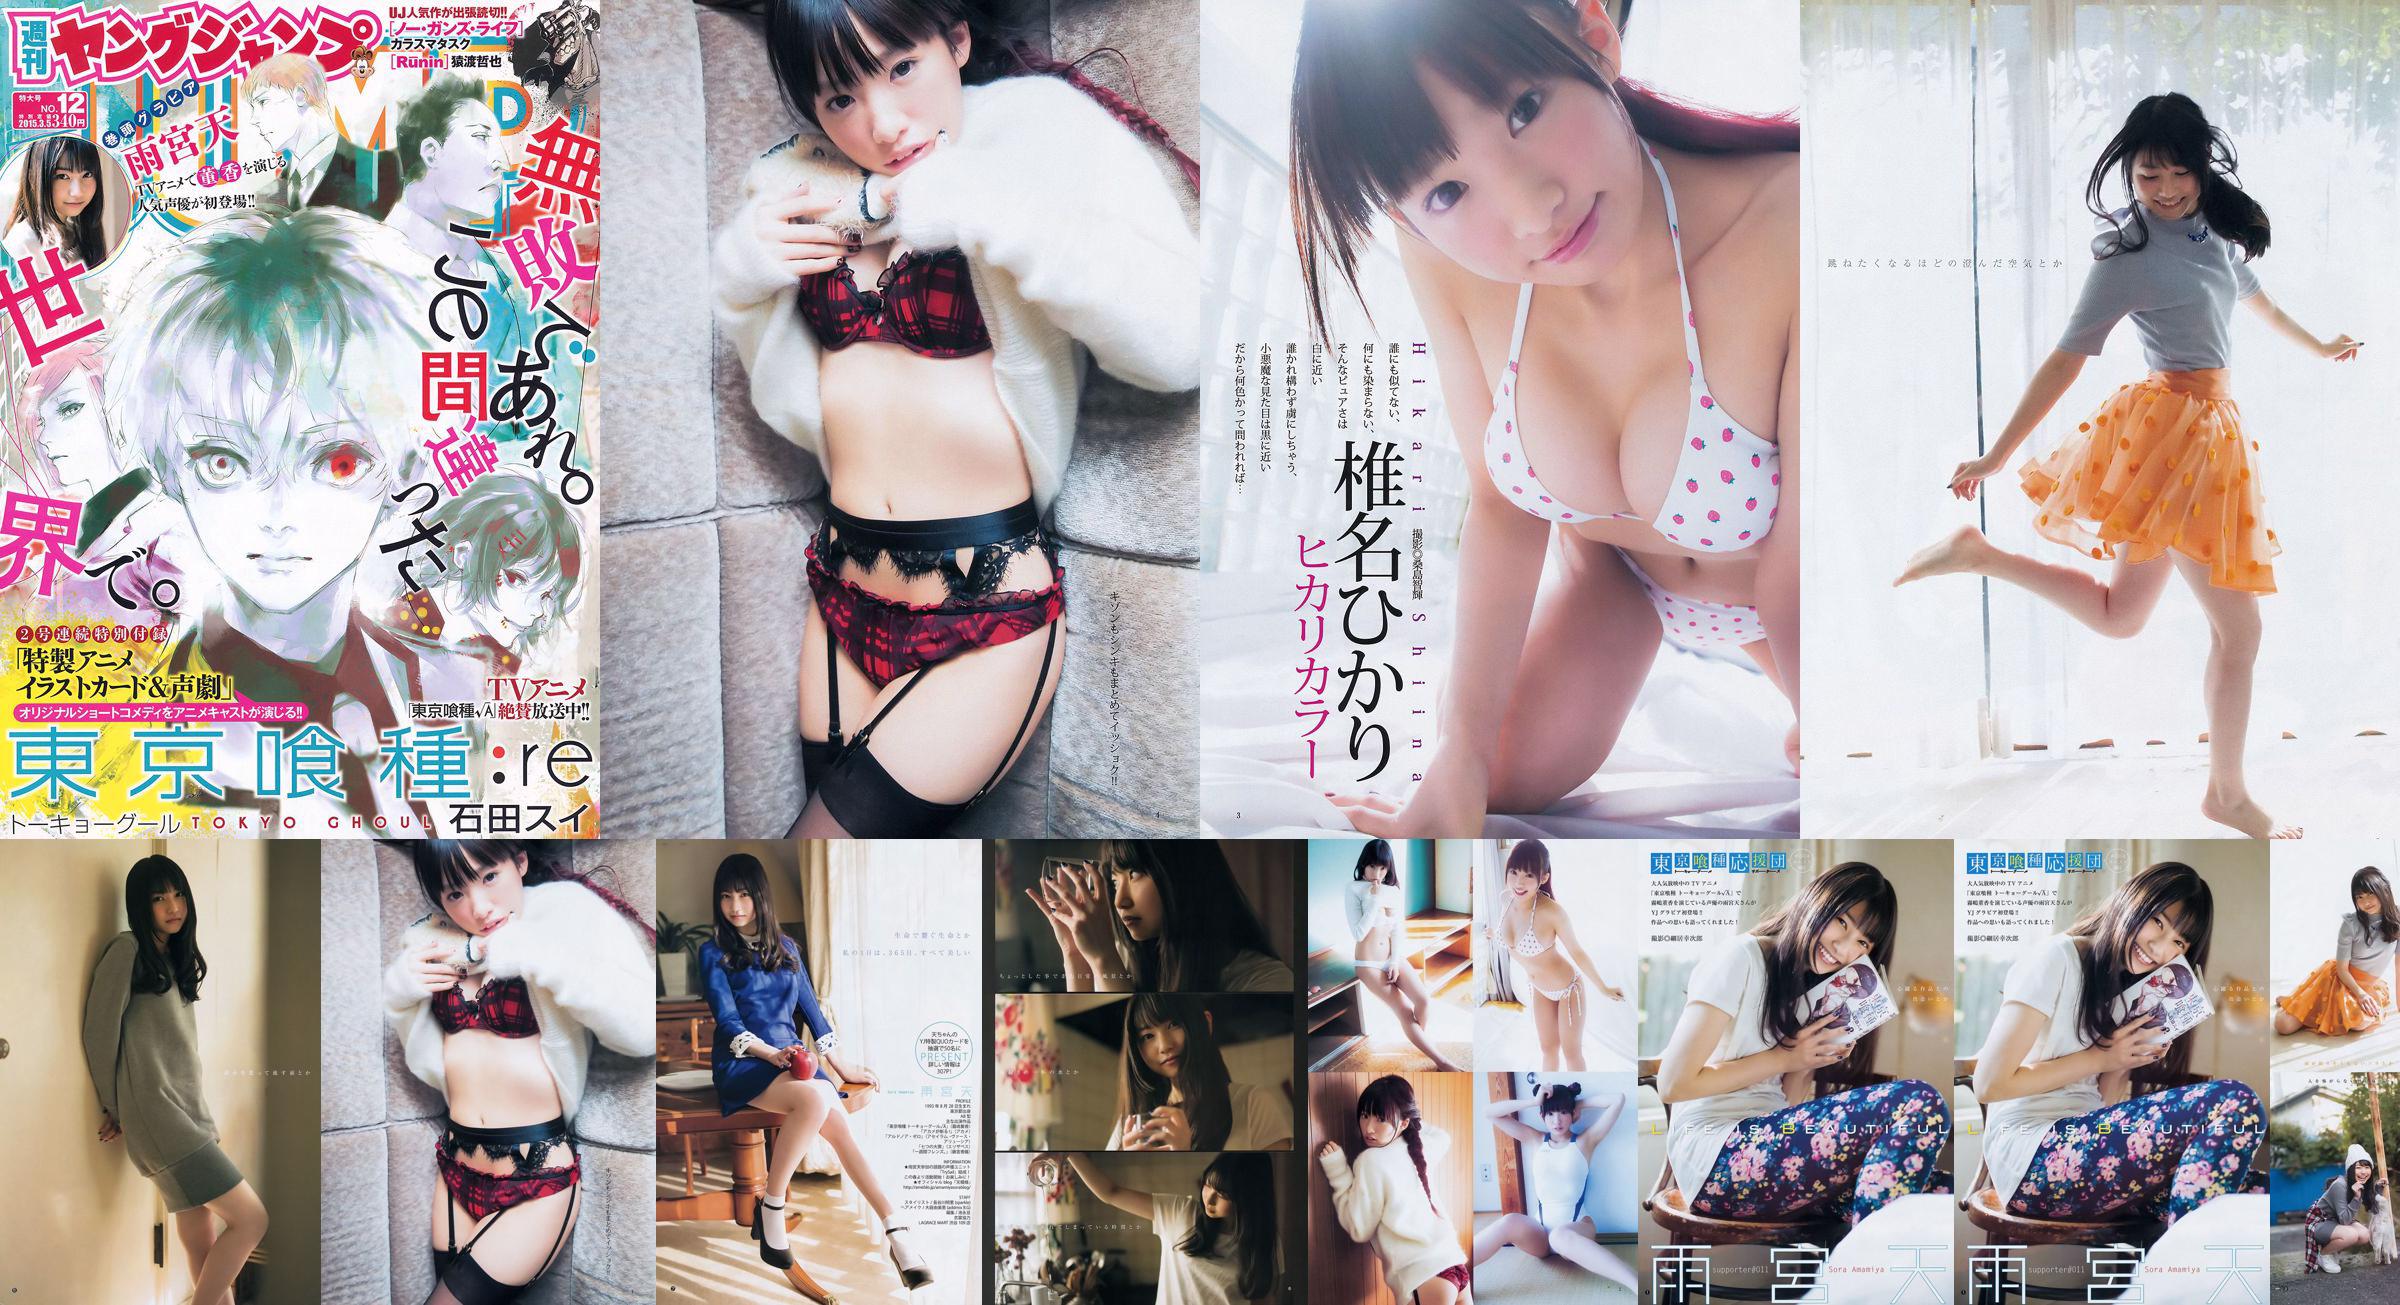 Amamiya Tian Shiina ひかり [Weekly Young Jump] 2015 No.12 Photo Magazine No.a0ffb4 Page 1